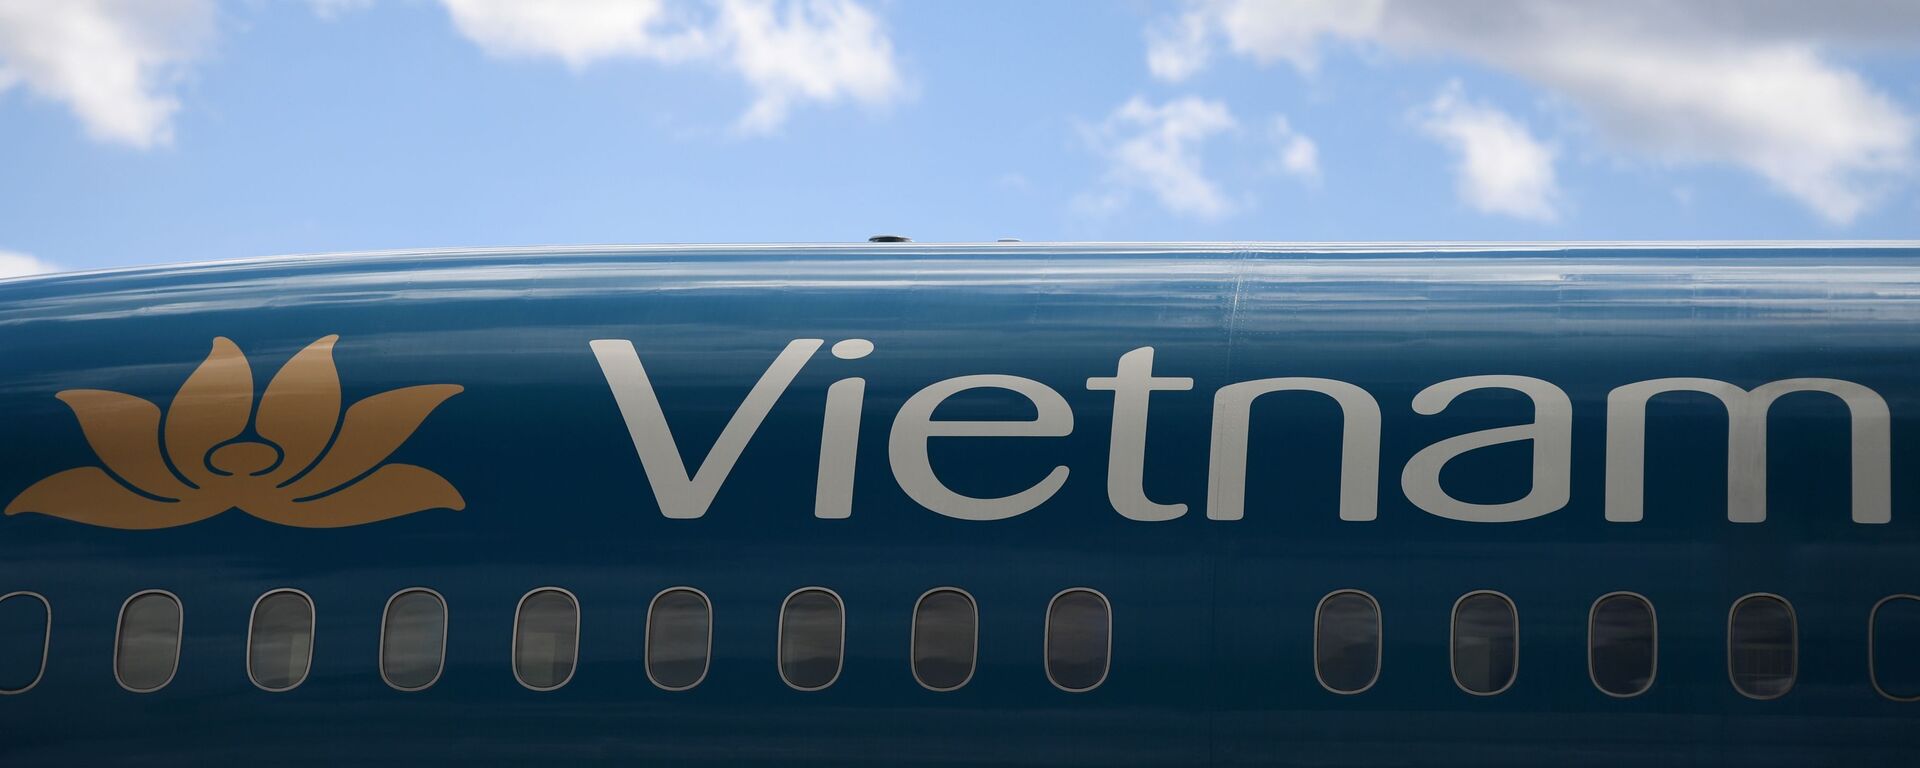 Máy bay của hãng Vietnam Airlines tại sân bay quốc tế “Sheremetyevo” - Sputnik Việt Nam, 1920, 31.05.2021